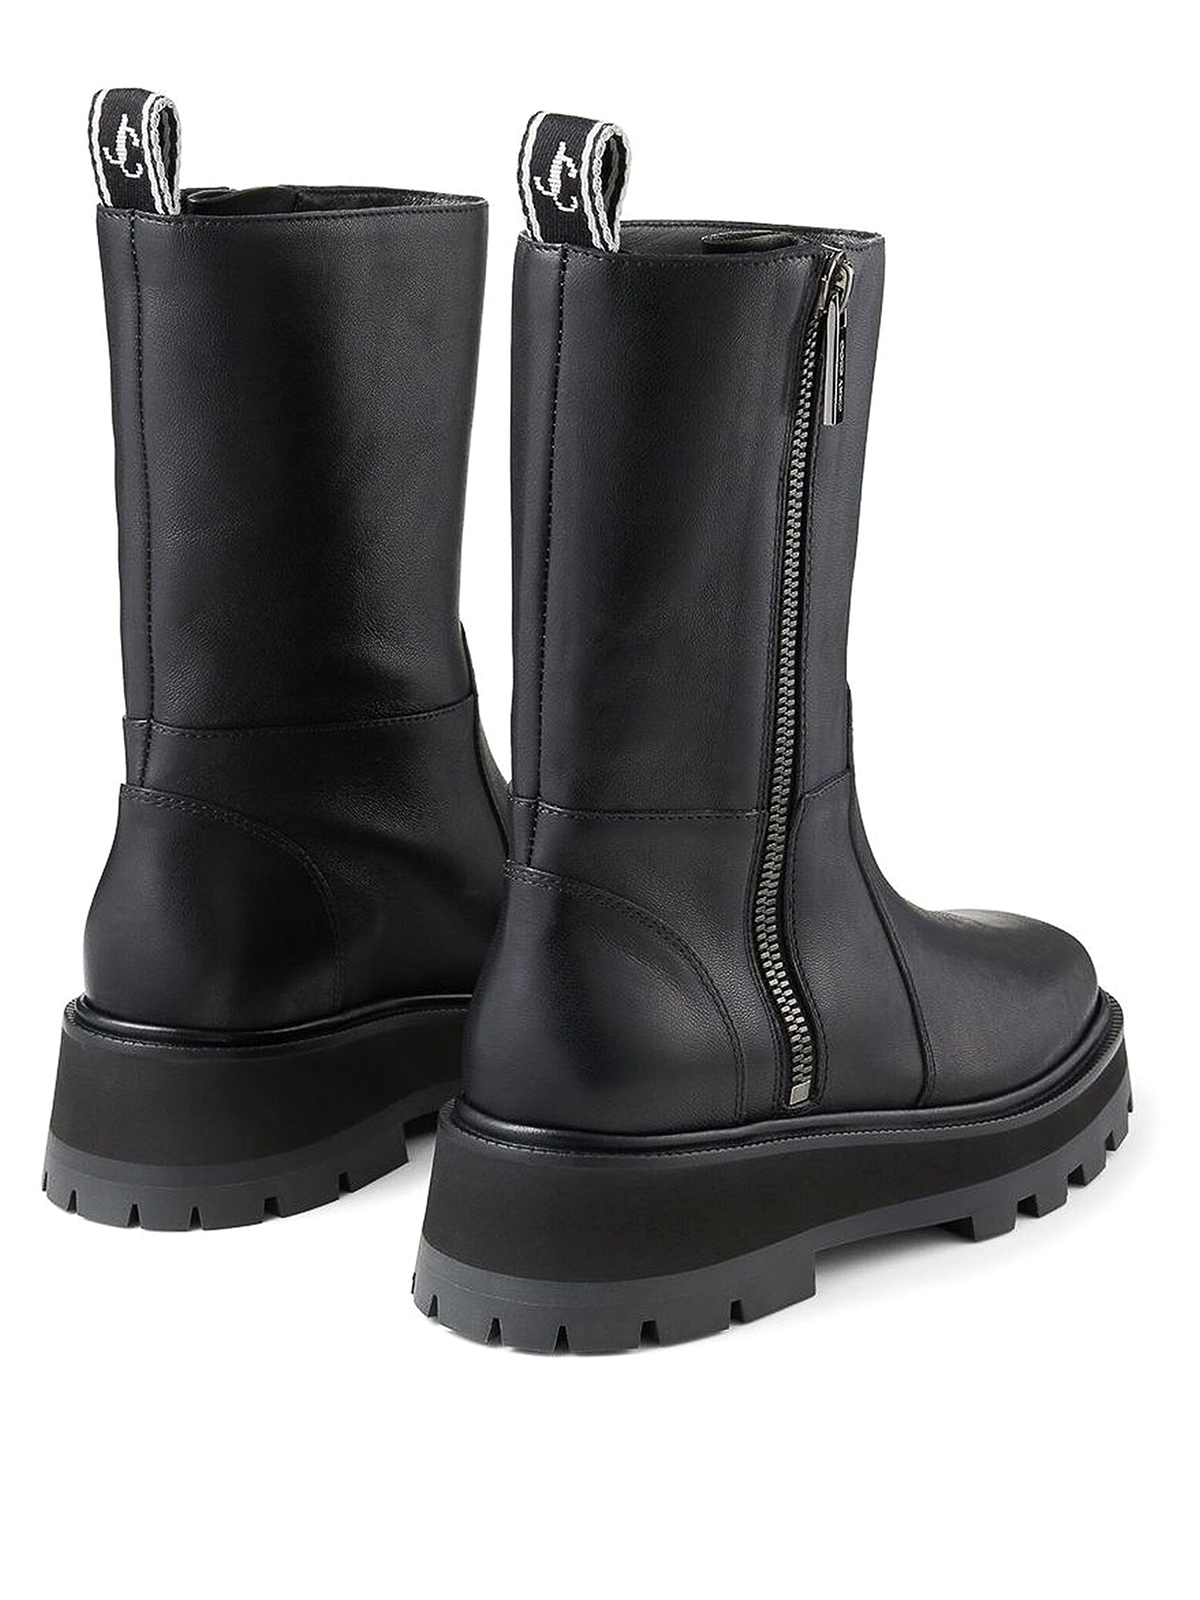 Boots Jimmy Choo - Bayu Flat leather boots - BAYUFLATRESBLACK